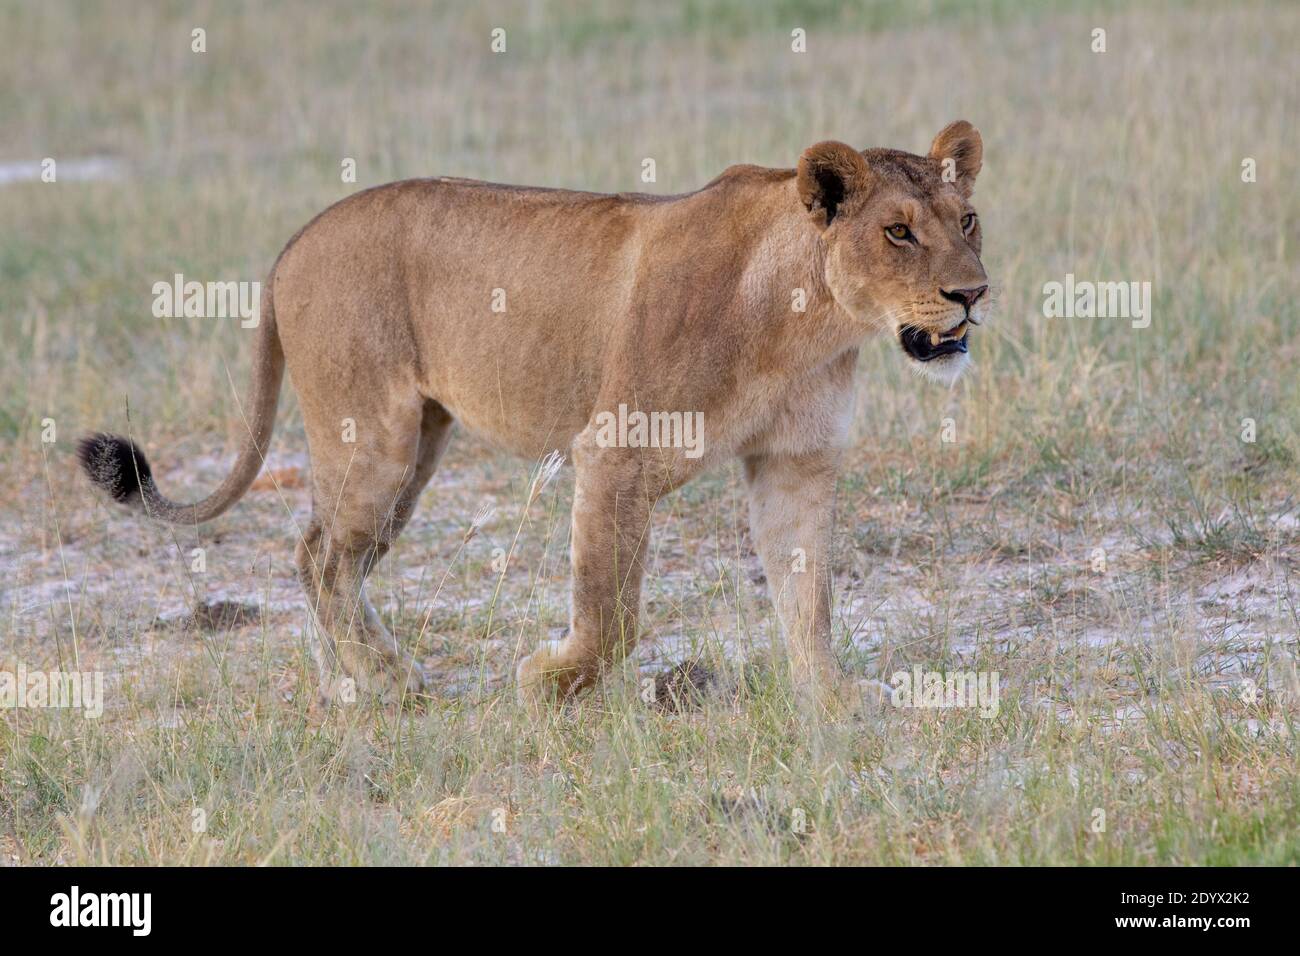 Afrikanische Löwin (Panthera leo). In der Spitze der, fast perfekt, körperliche Verfassung, gegen Ende der Regenzeit. Botswana. Februar. Stockfoto